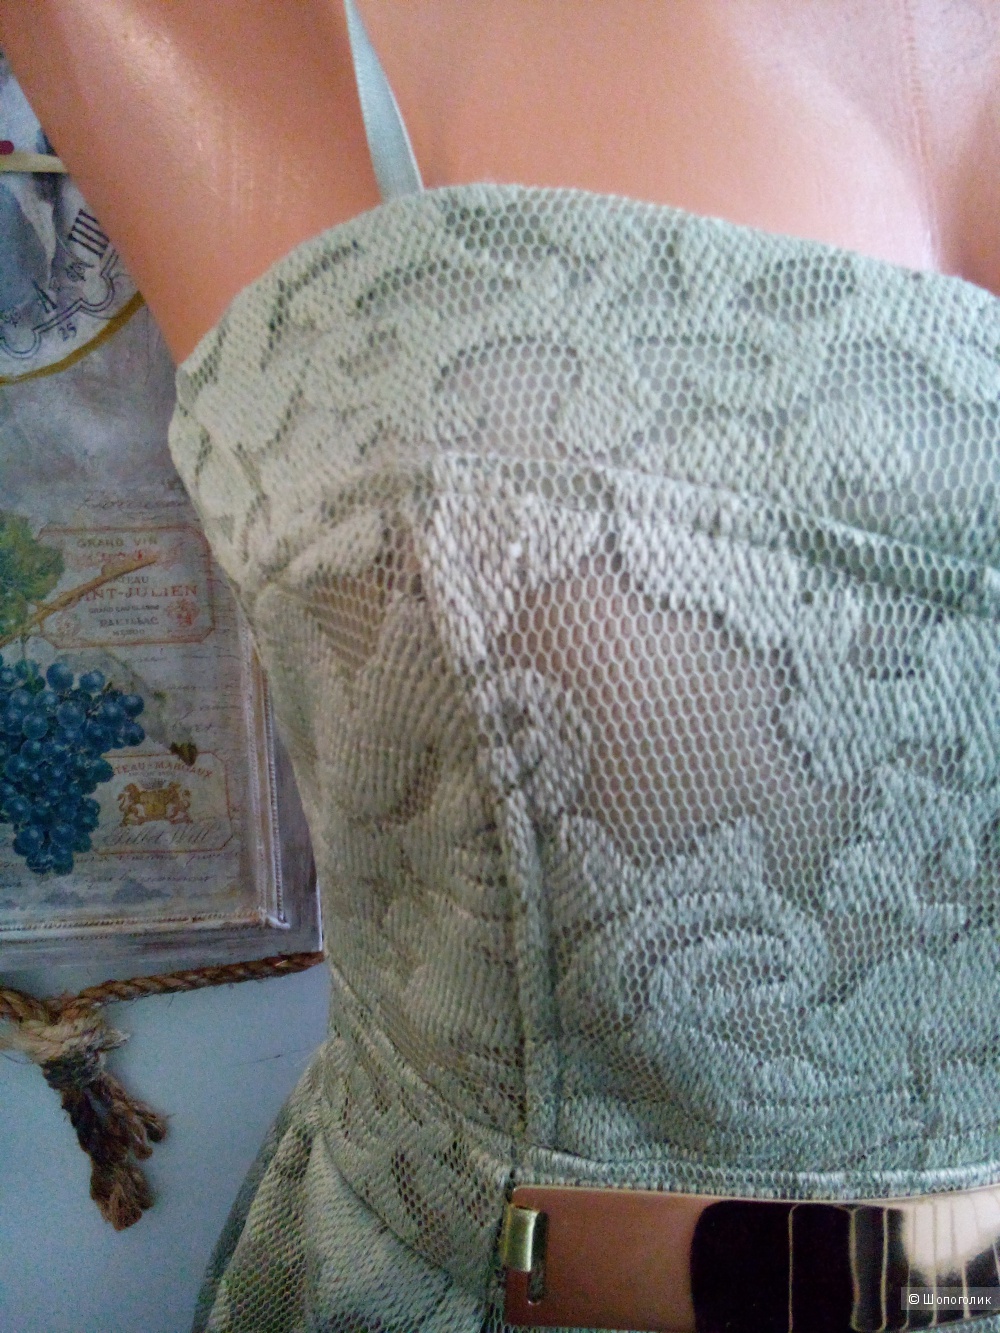 Платье кружево олива Rinaschemento Италия в размере S(42-44)